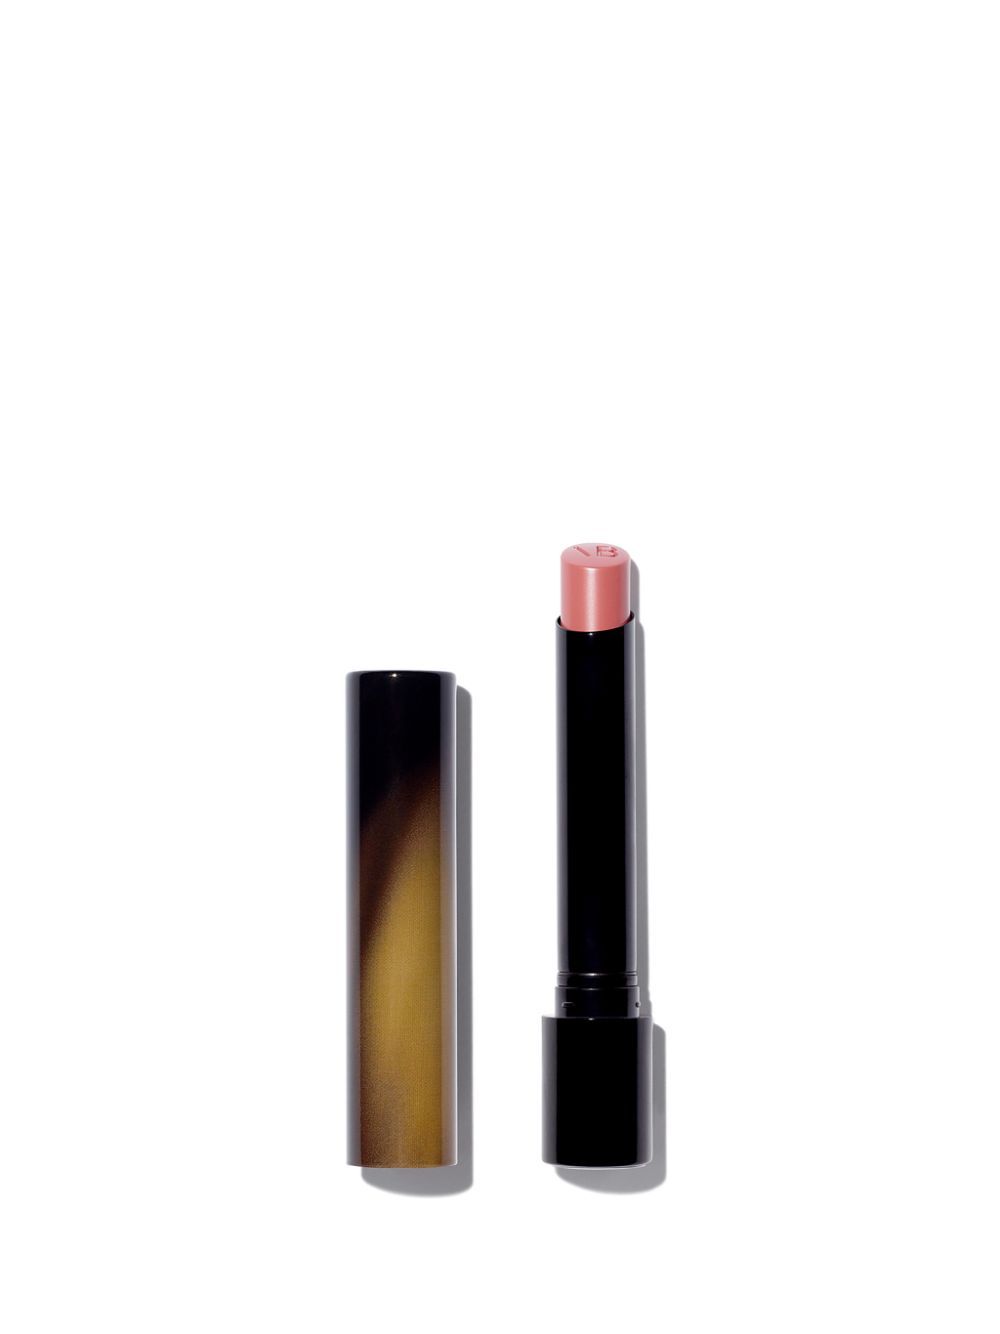 Victoria Beckham Beauty Posh Lipstick Pout | Violet Grey